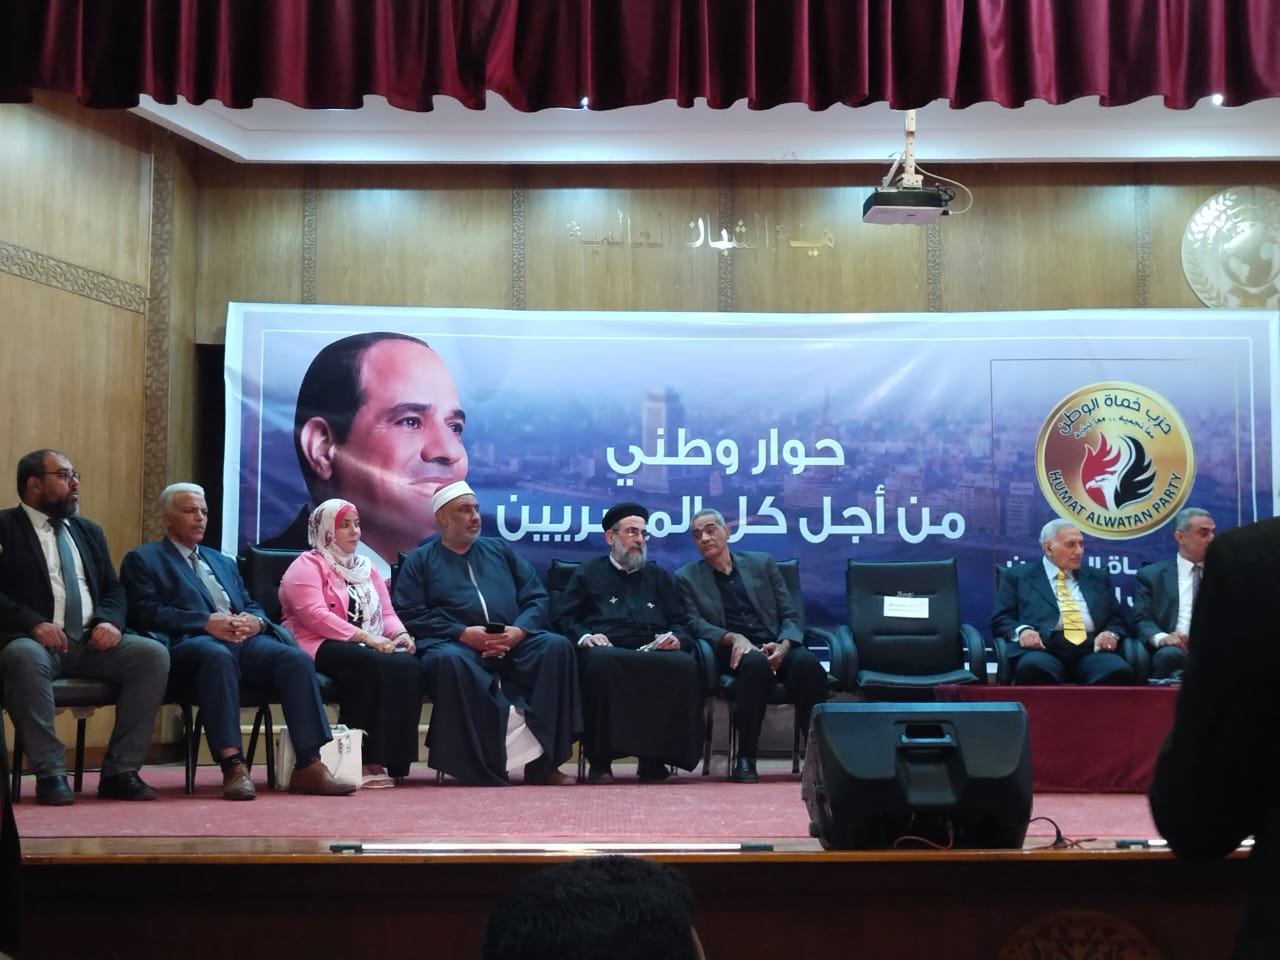 حزب حماة الوطن بالقليوبية ينظم حوار وطني بعنوان من أجل كل المصريين  (2)